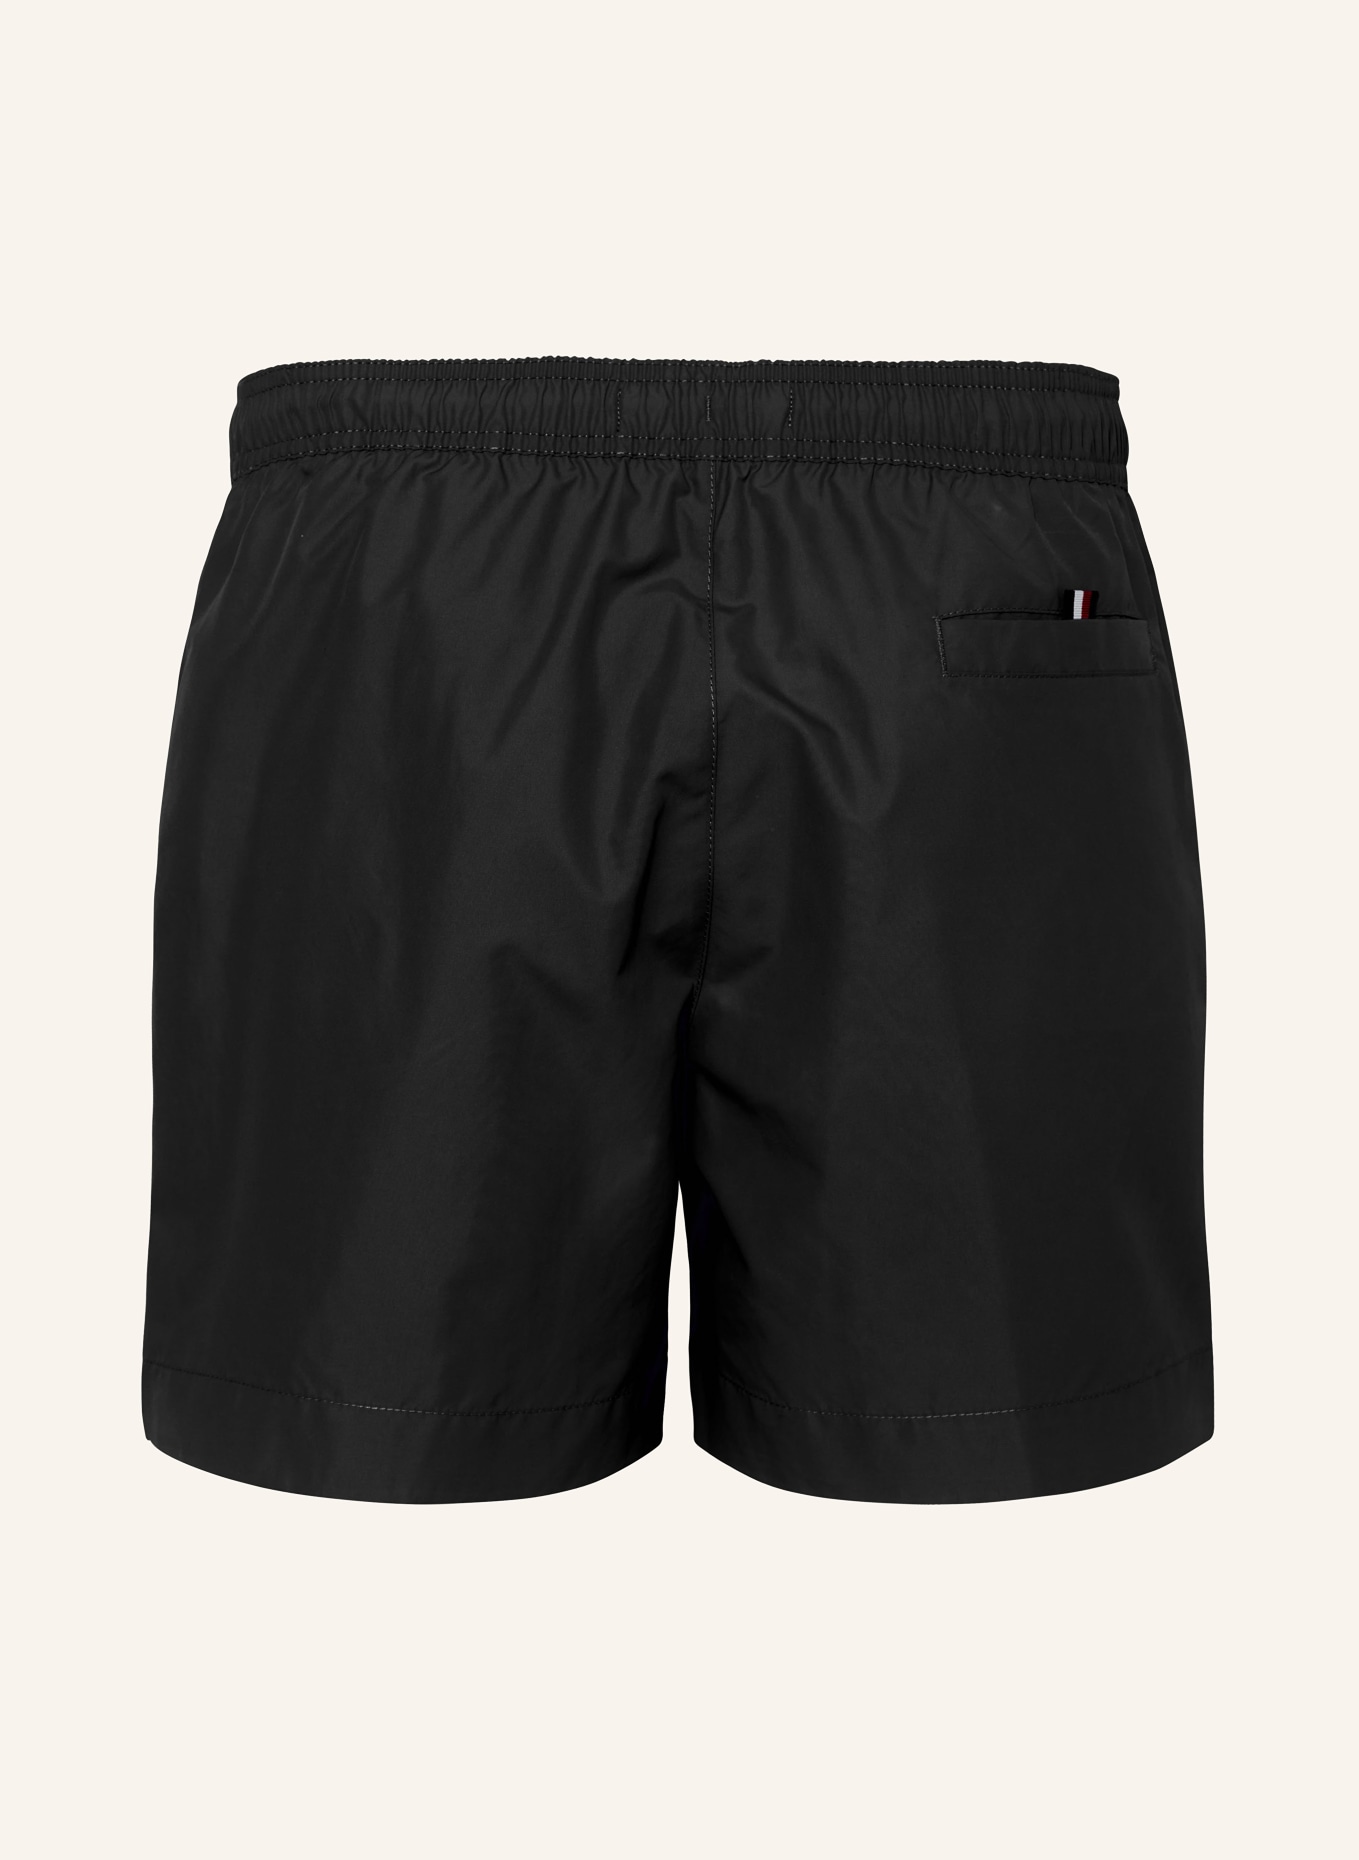 TOMMY HILFIGER Swim shorts, Color: BLACK (Image 2)